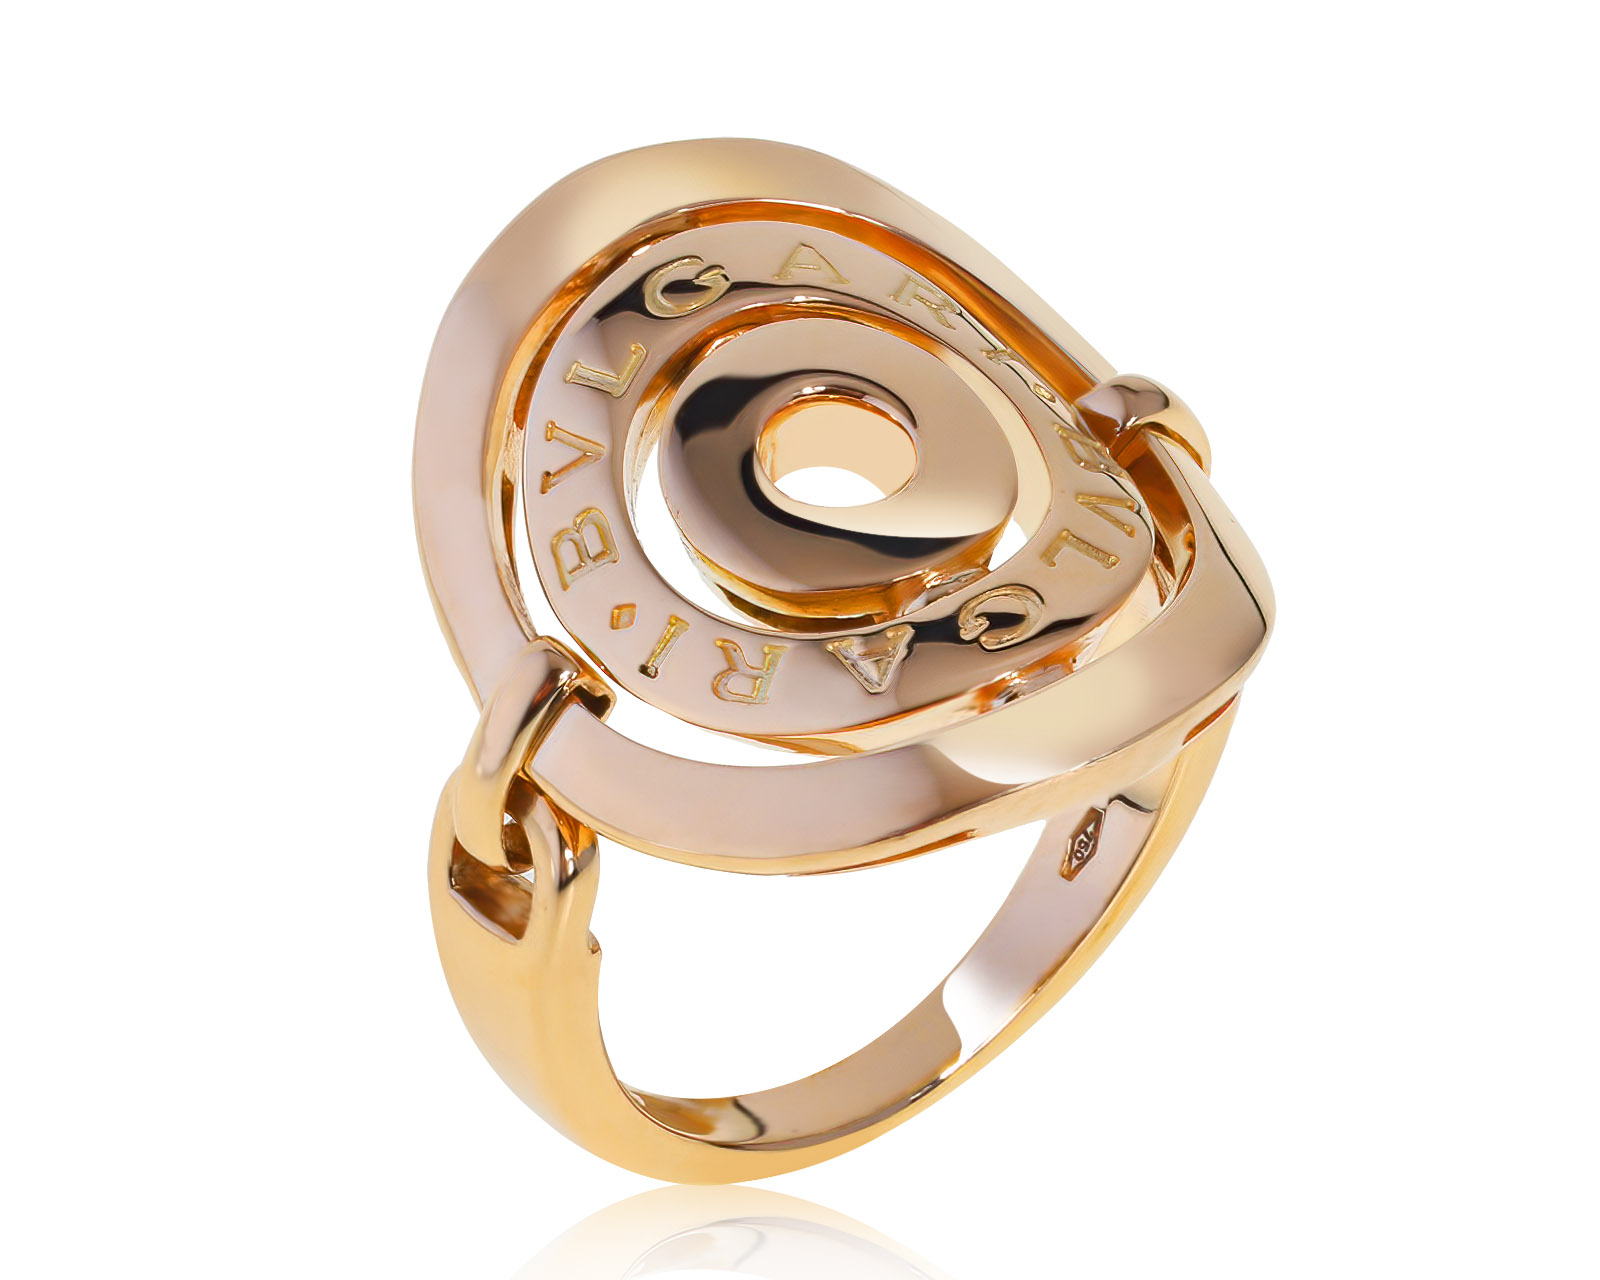 Оригинальное золотое кольцо Bvlgari Astrale Cerchi 180821/10